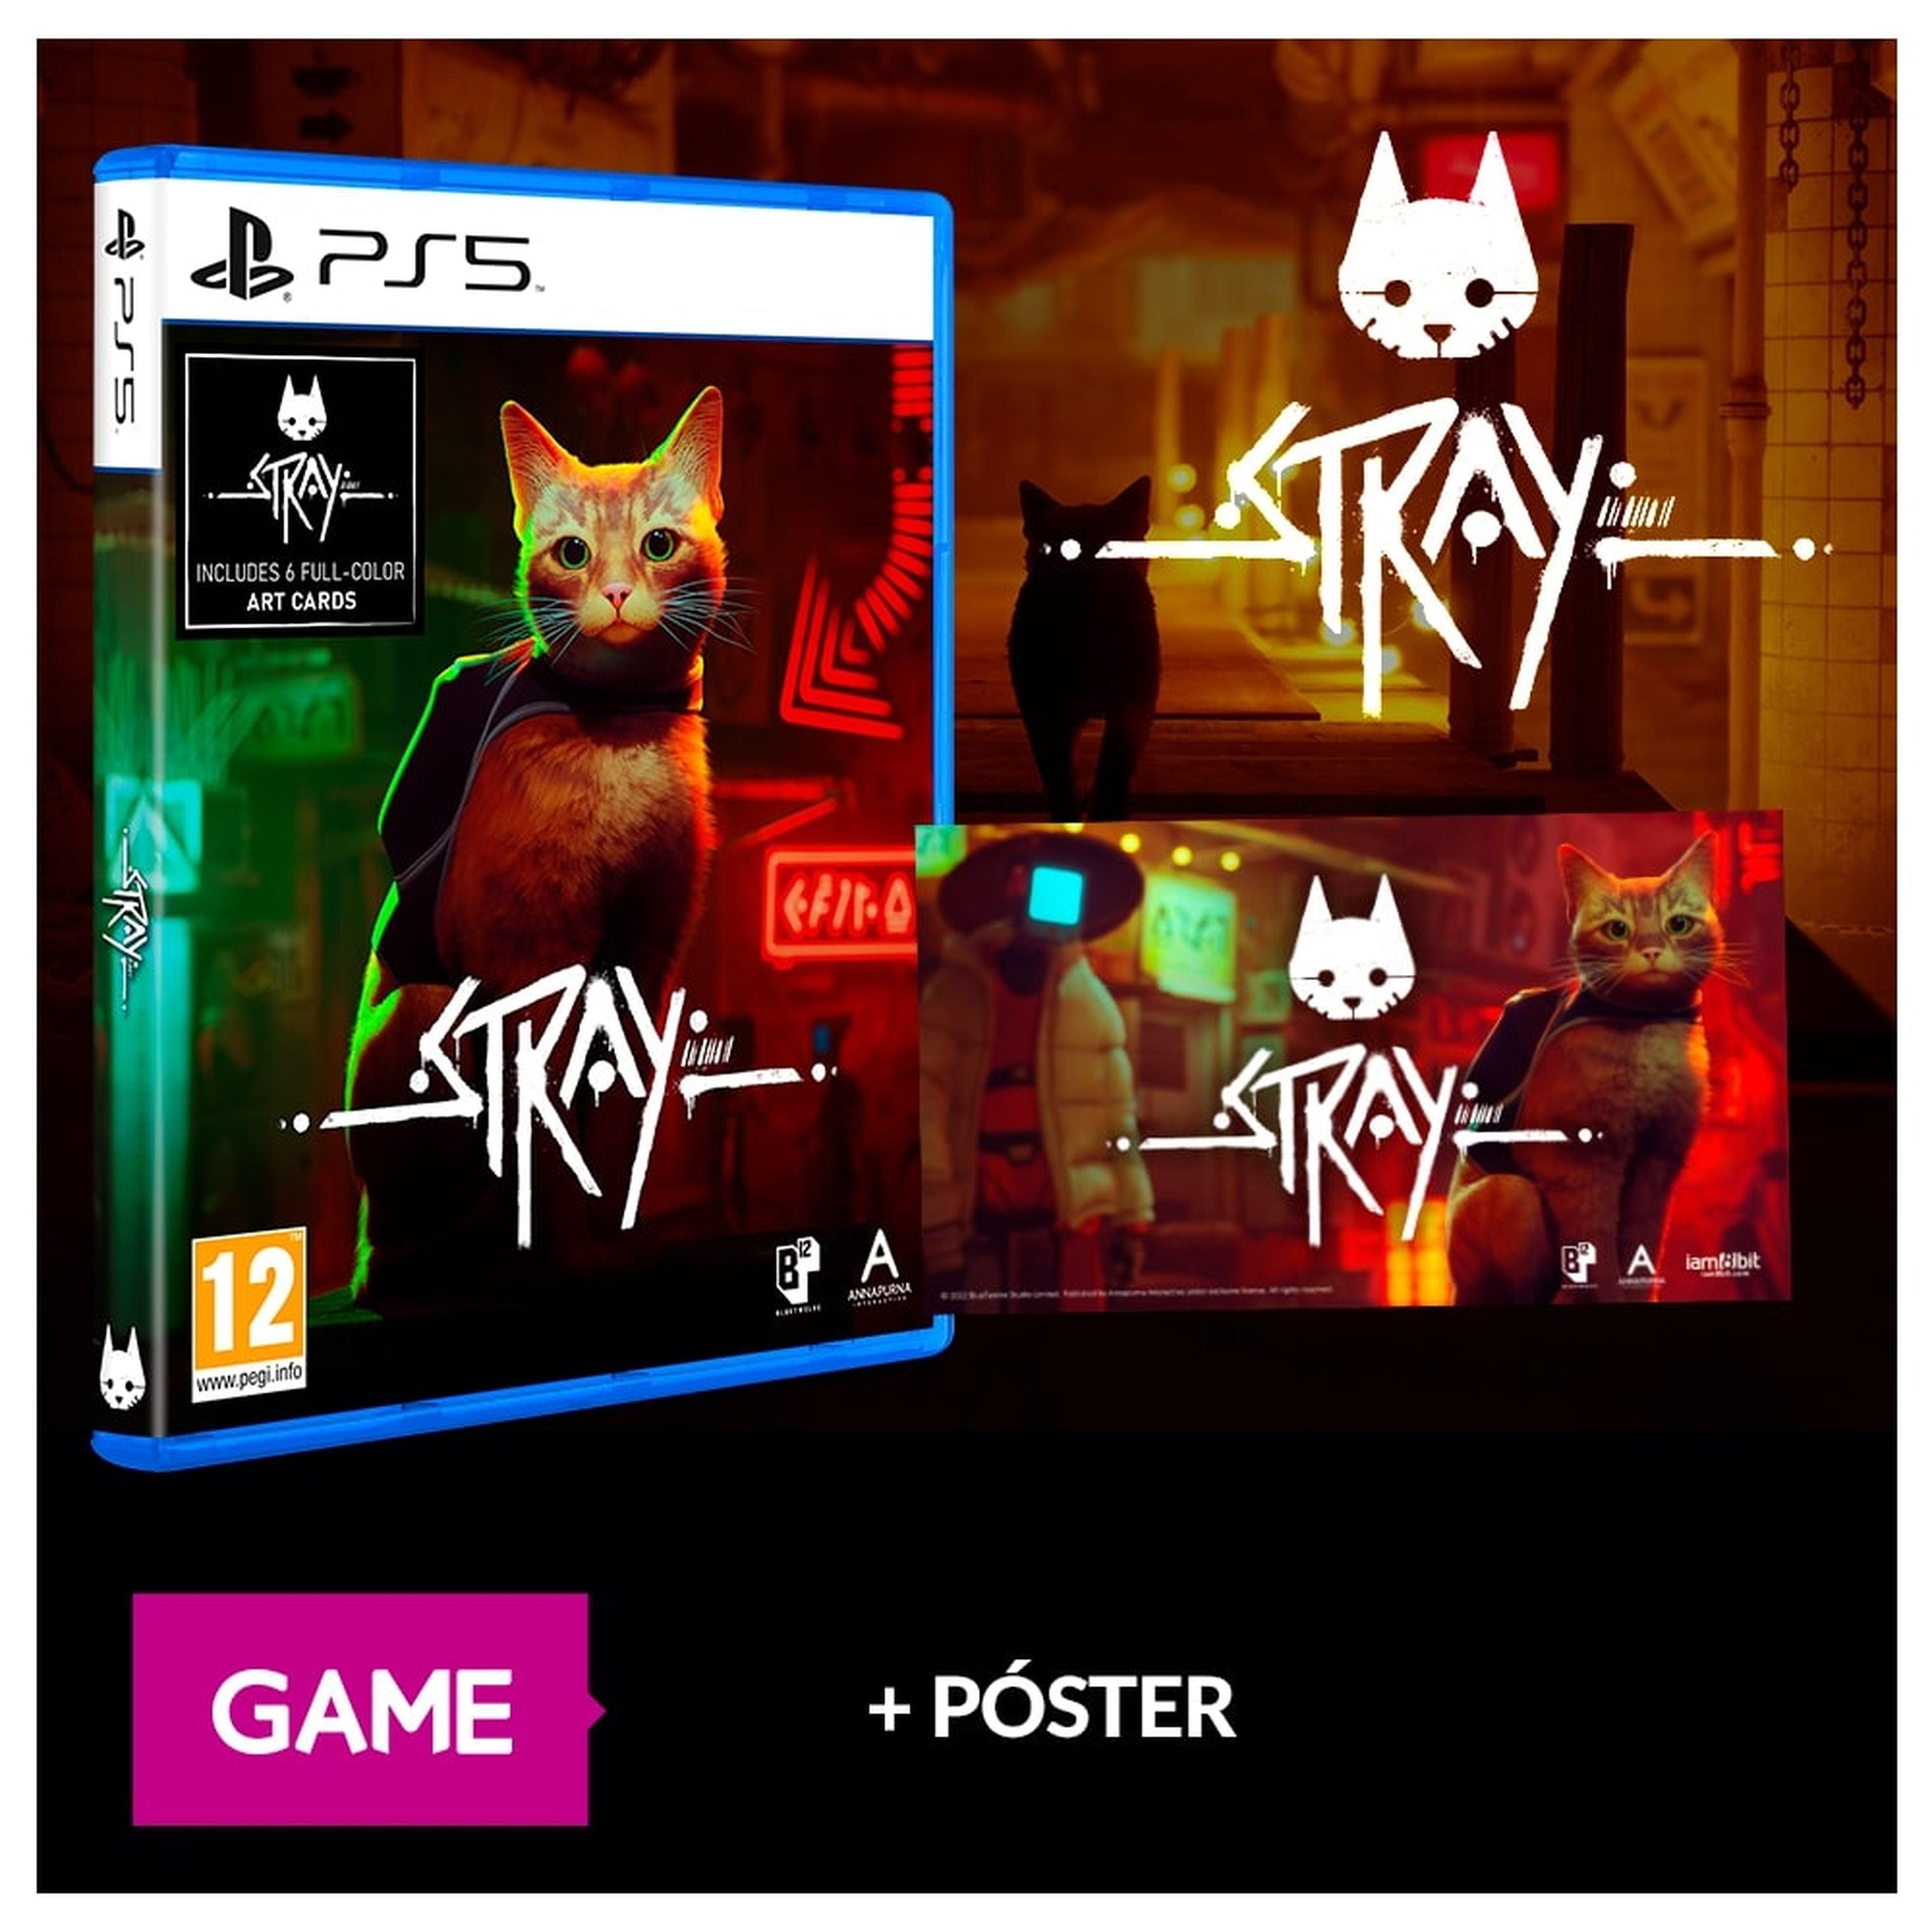 Stray, el juego de PS5 protagonizado por un gato, ofrece nuevos detalles